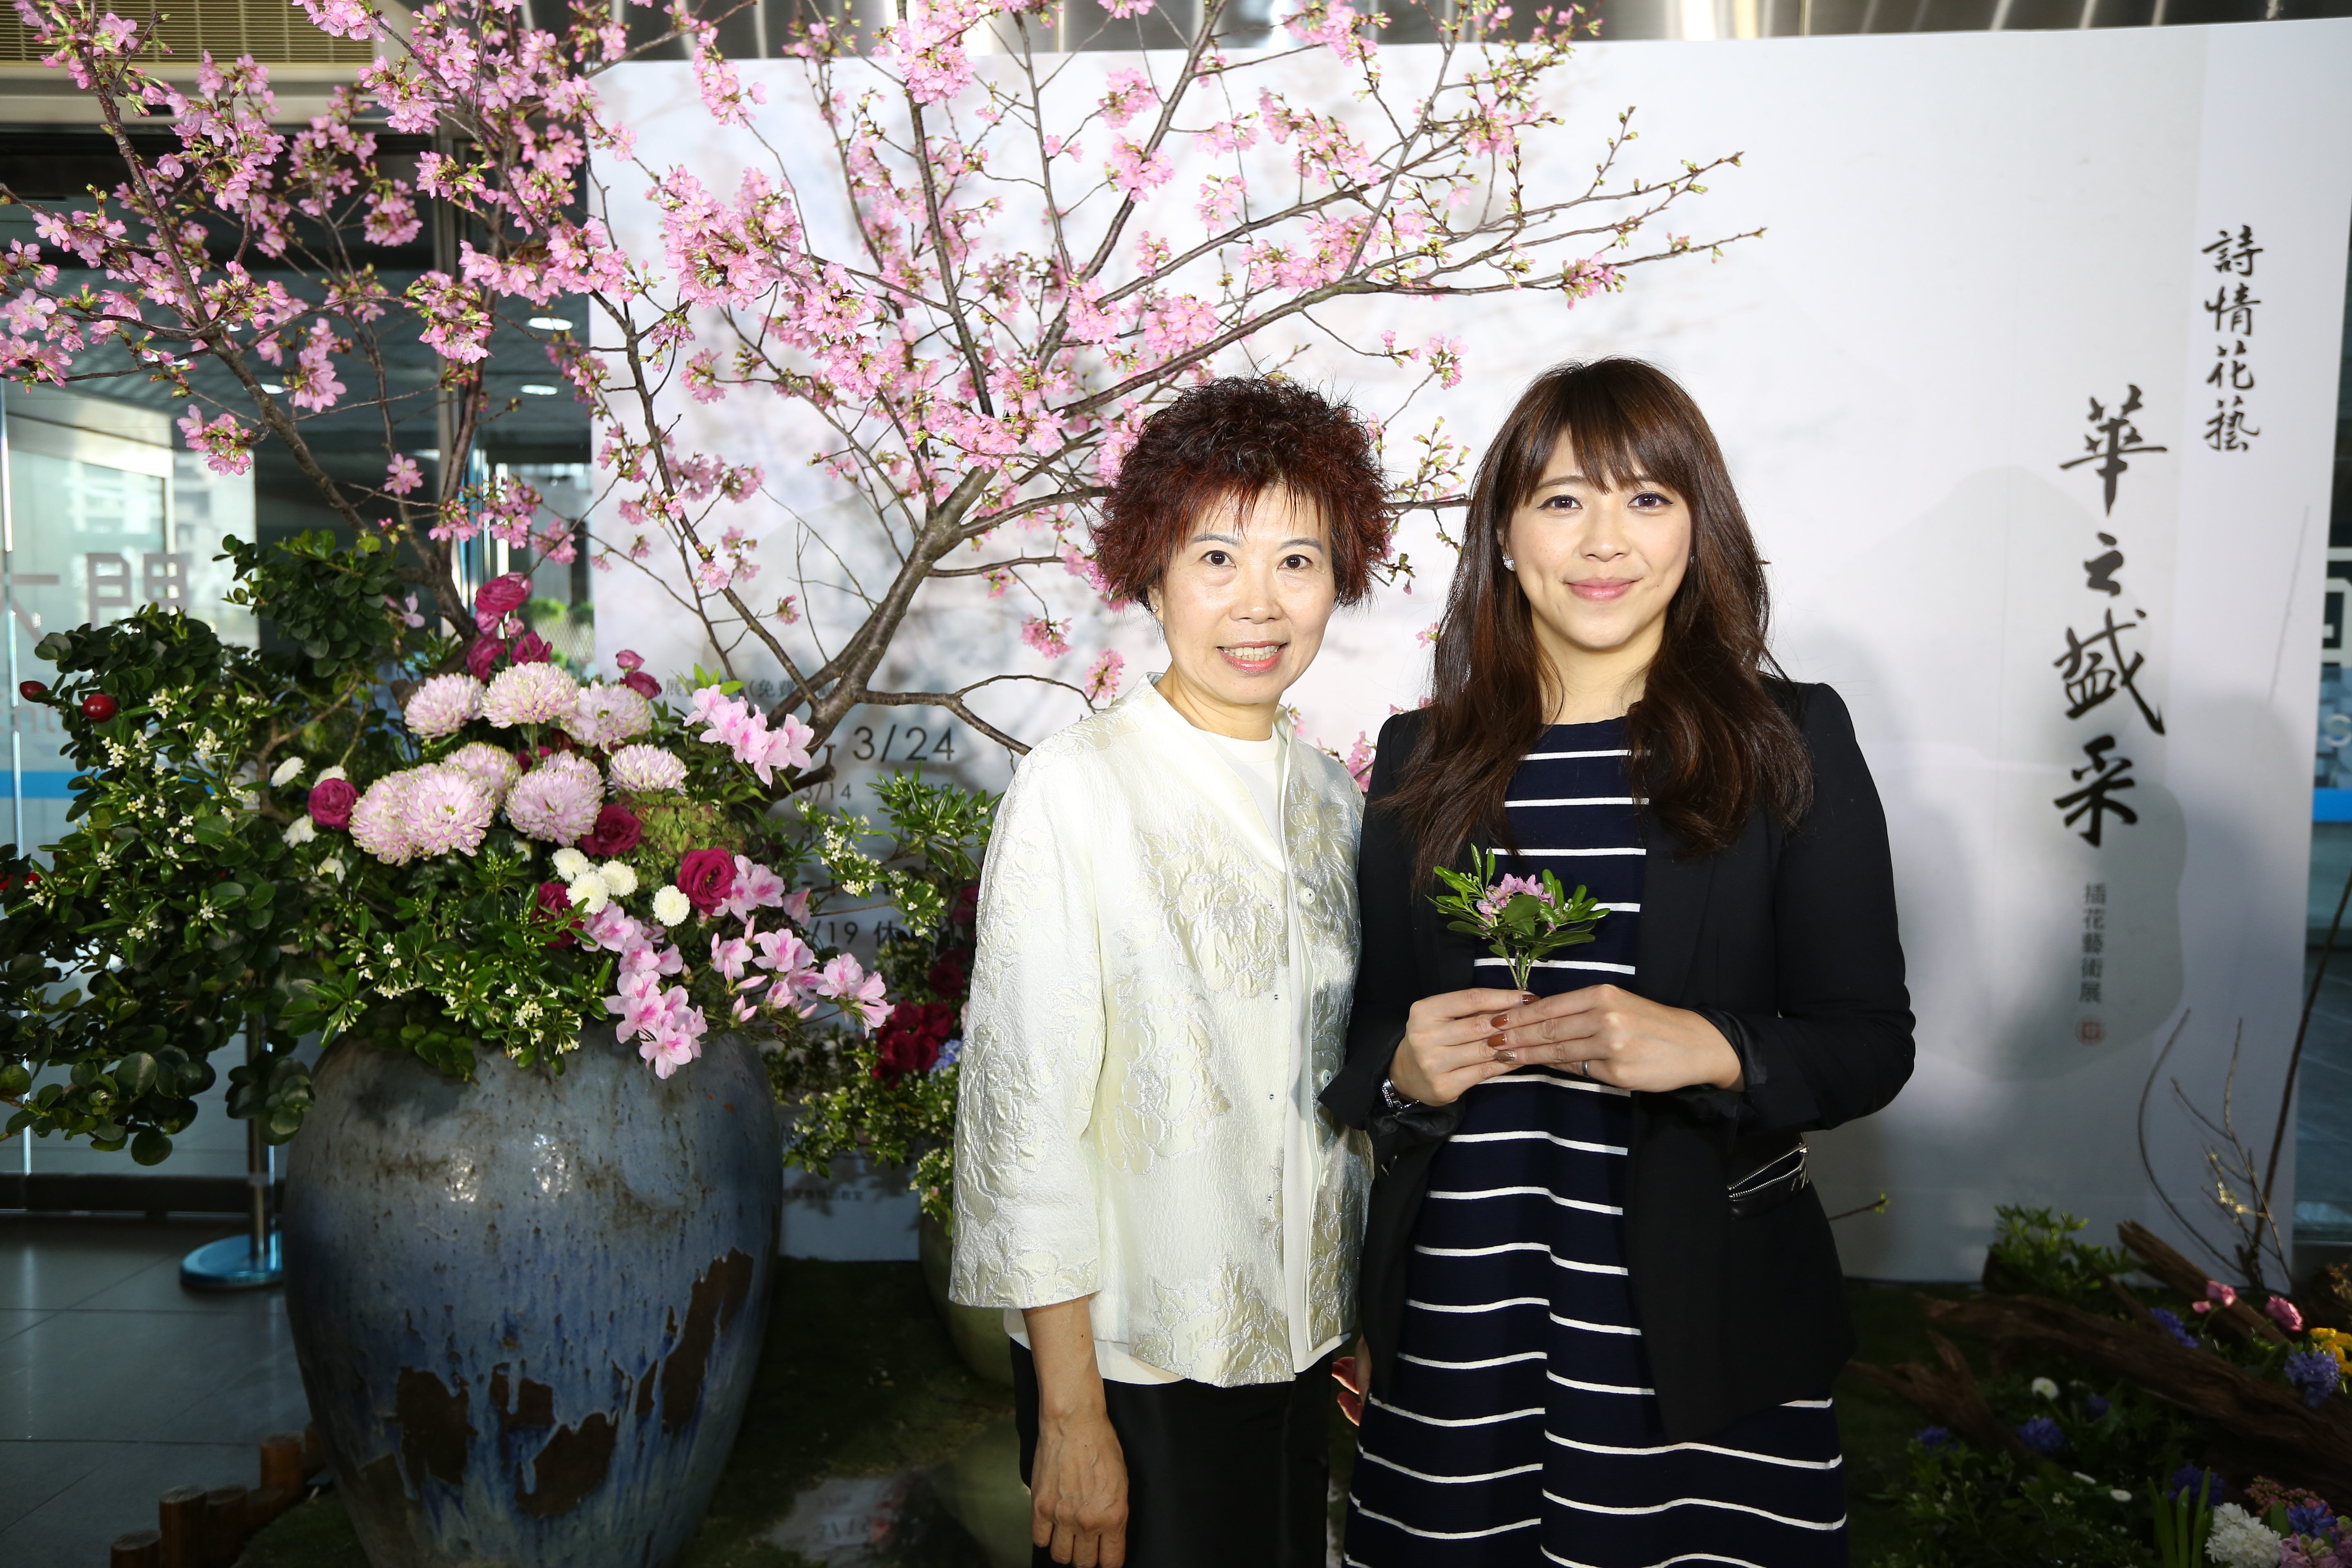 觀傳局長陳思宇(右)感謝中華花藝王愛珠老師的花藝作品為市府大廳帶來春天氣息。